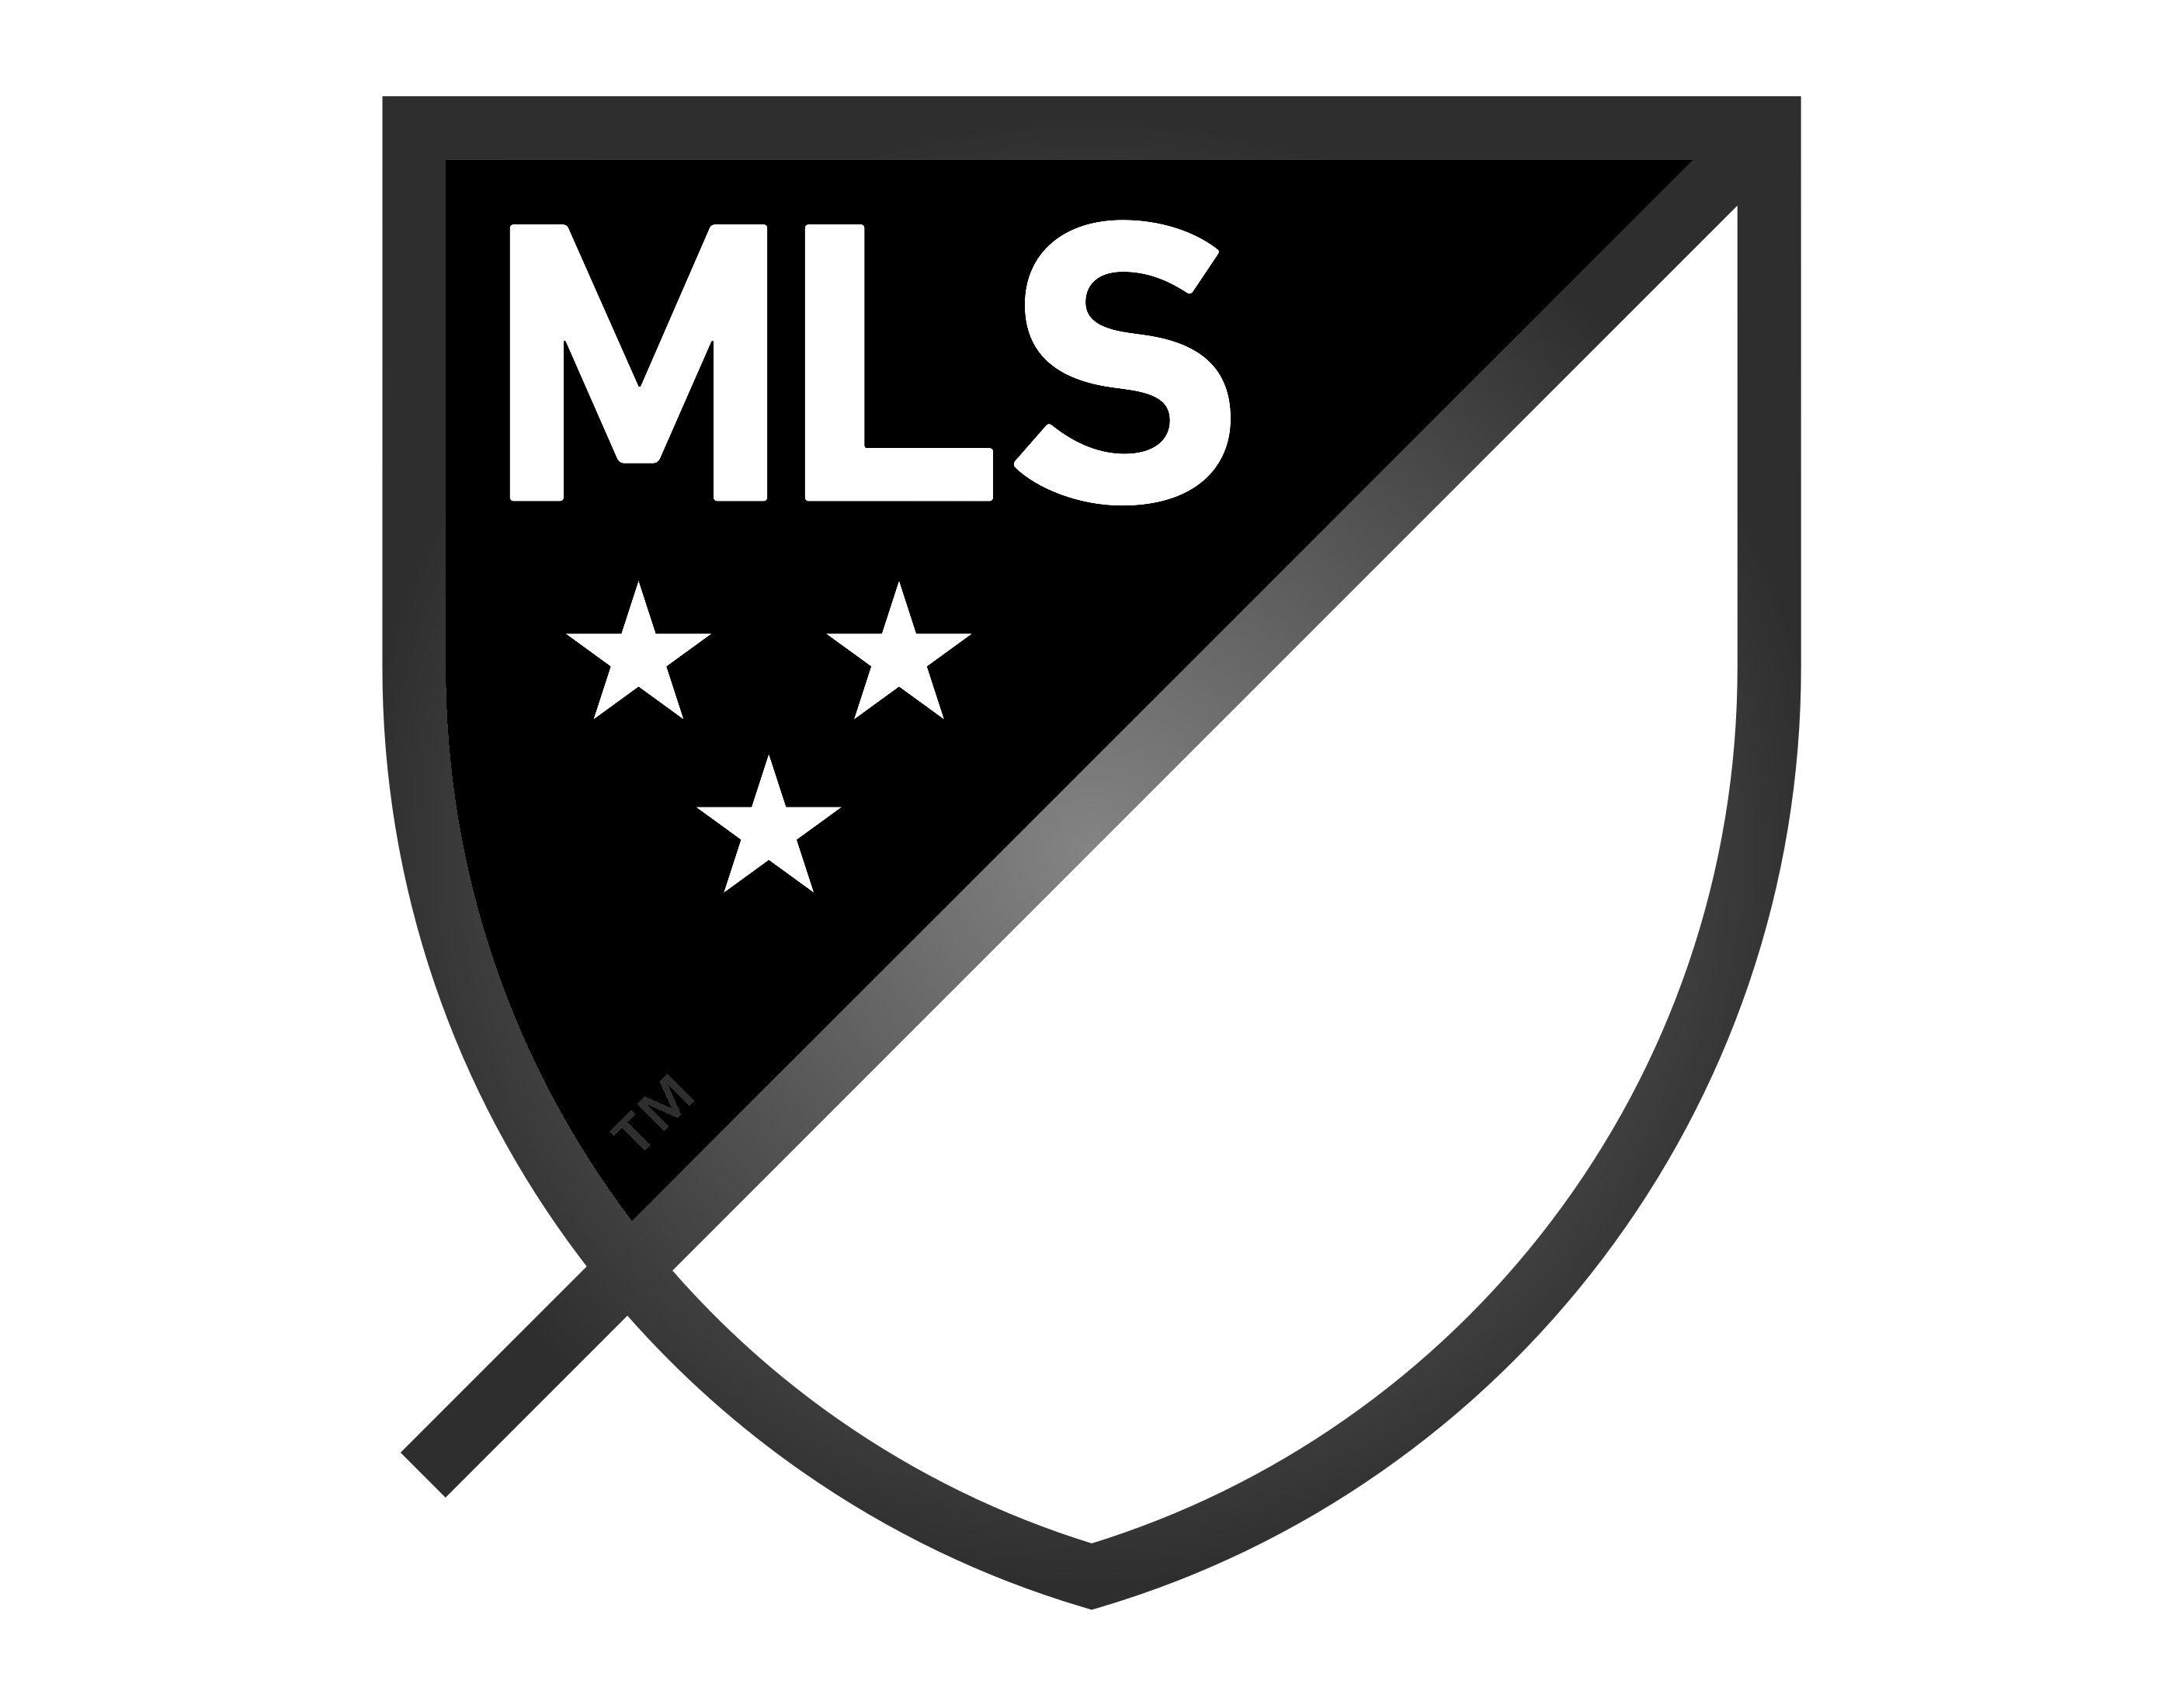 MLS Logo - MLS Logo, Major League Soccer symbol, meaning